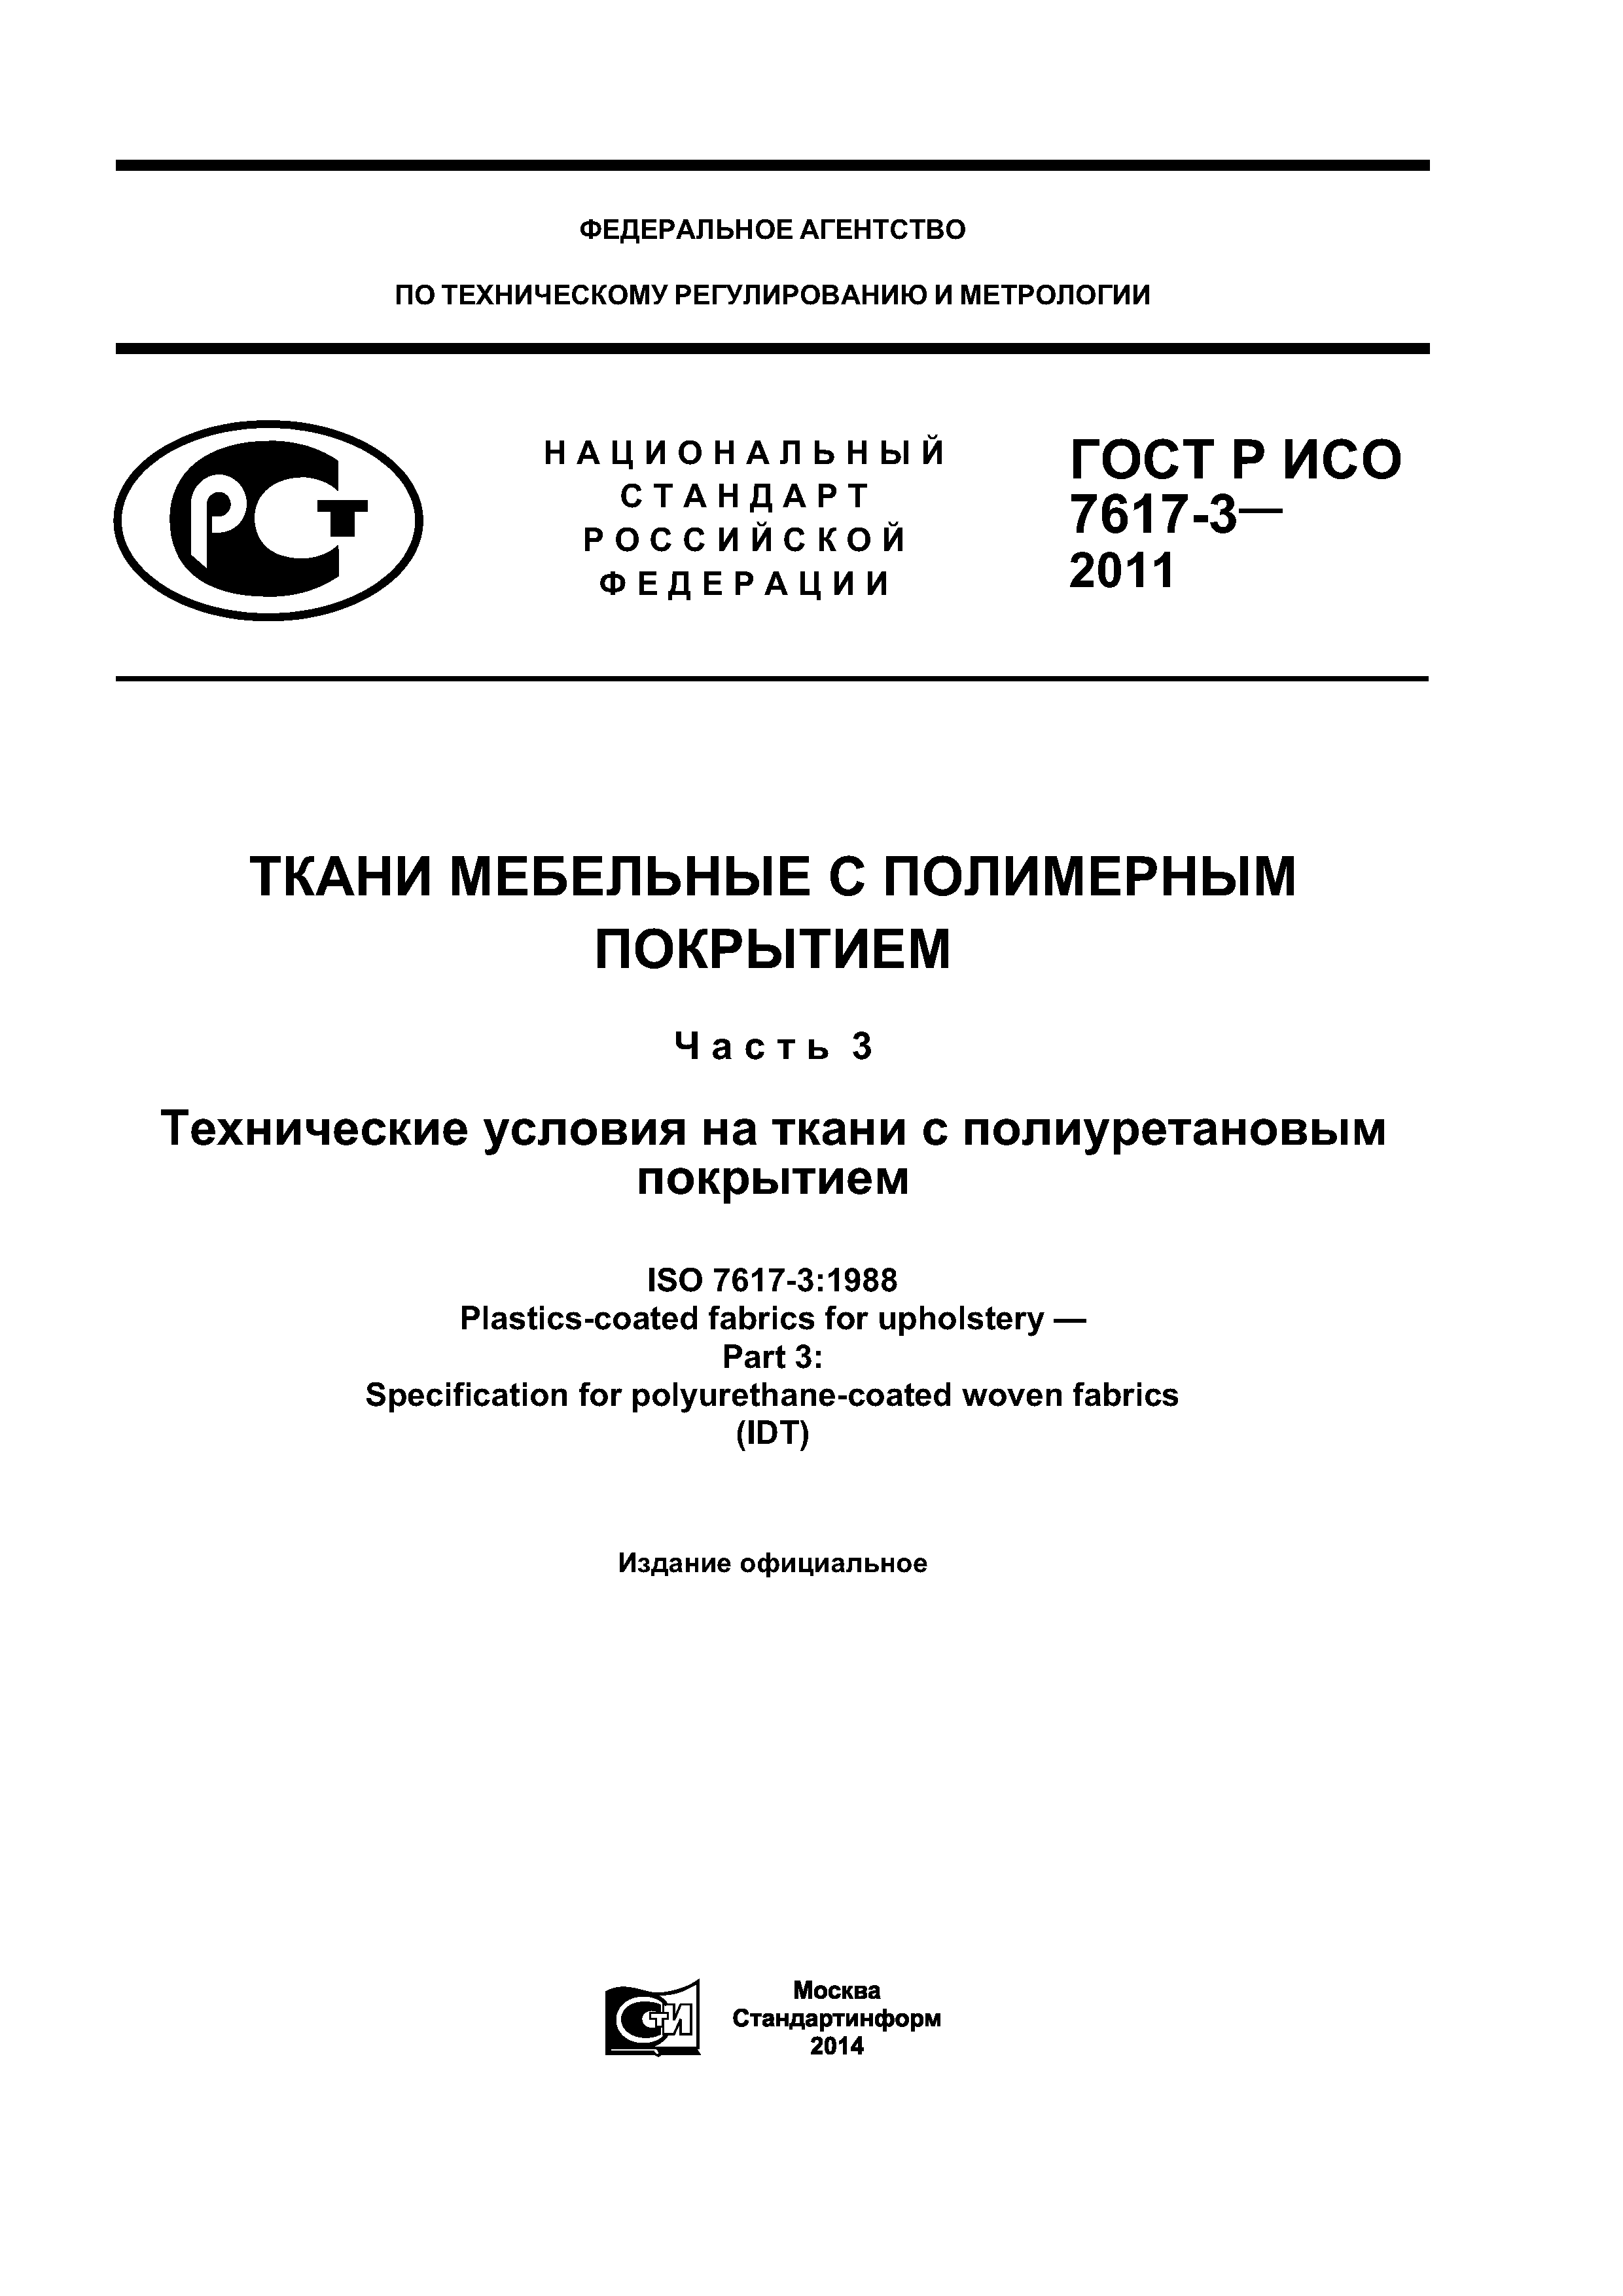 ГОСТ Р ИСО 7617-3-2011